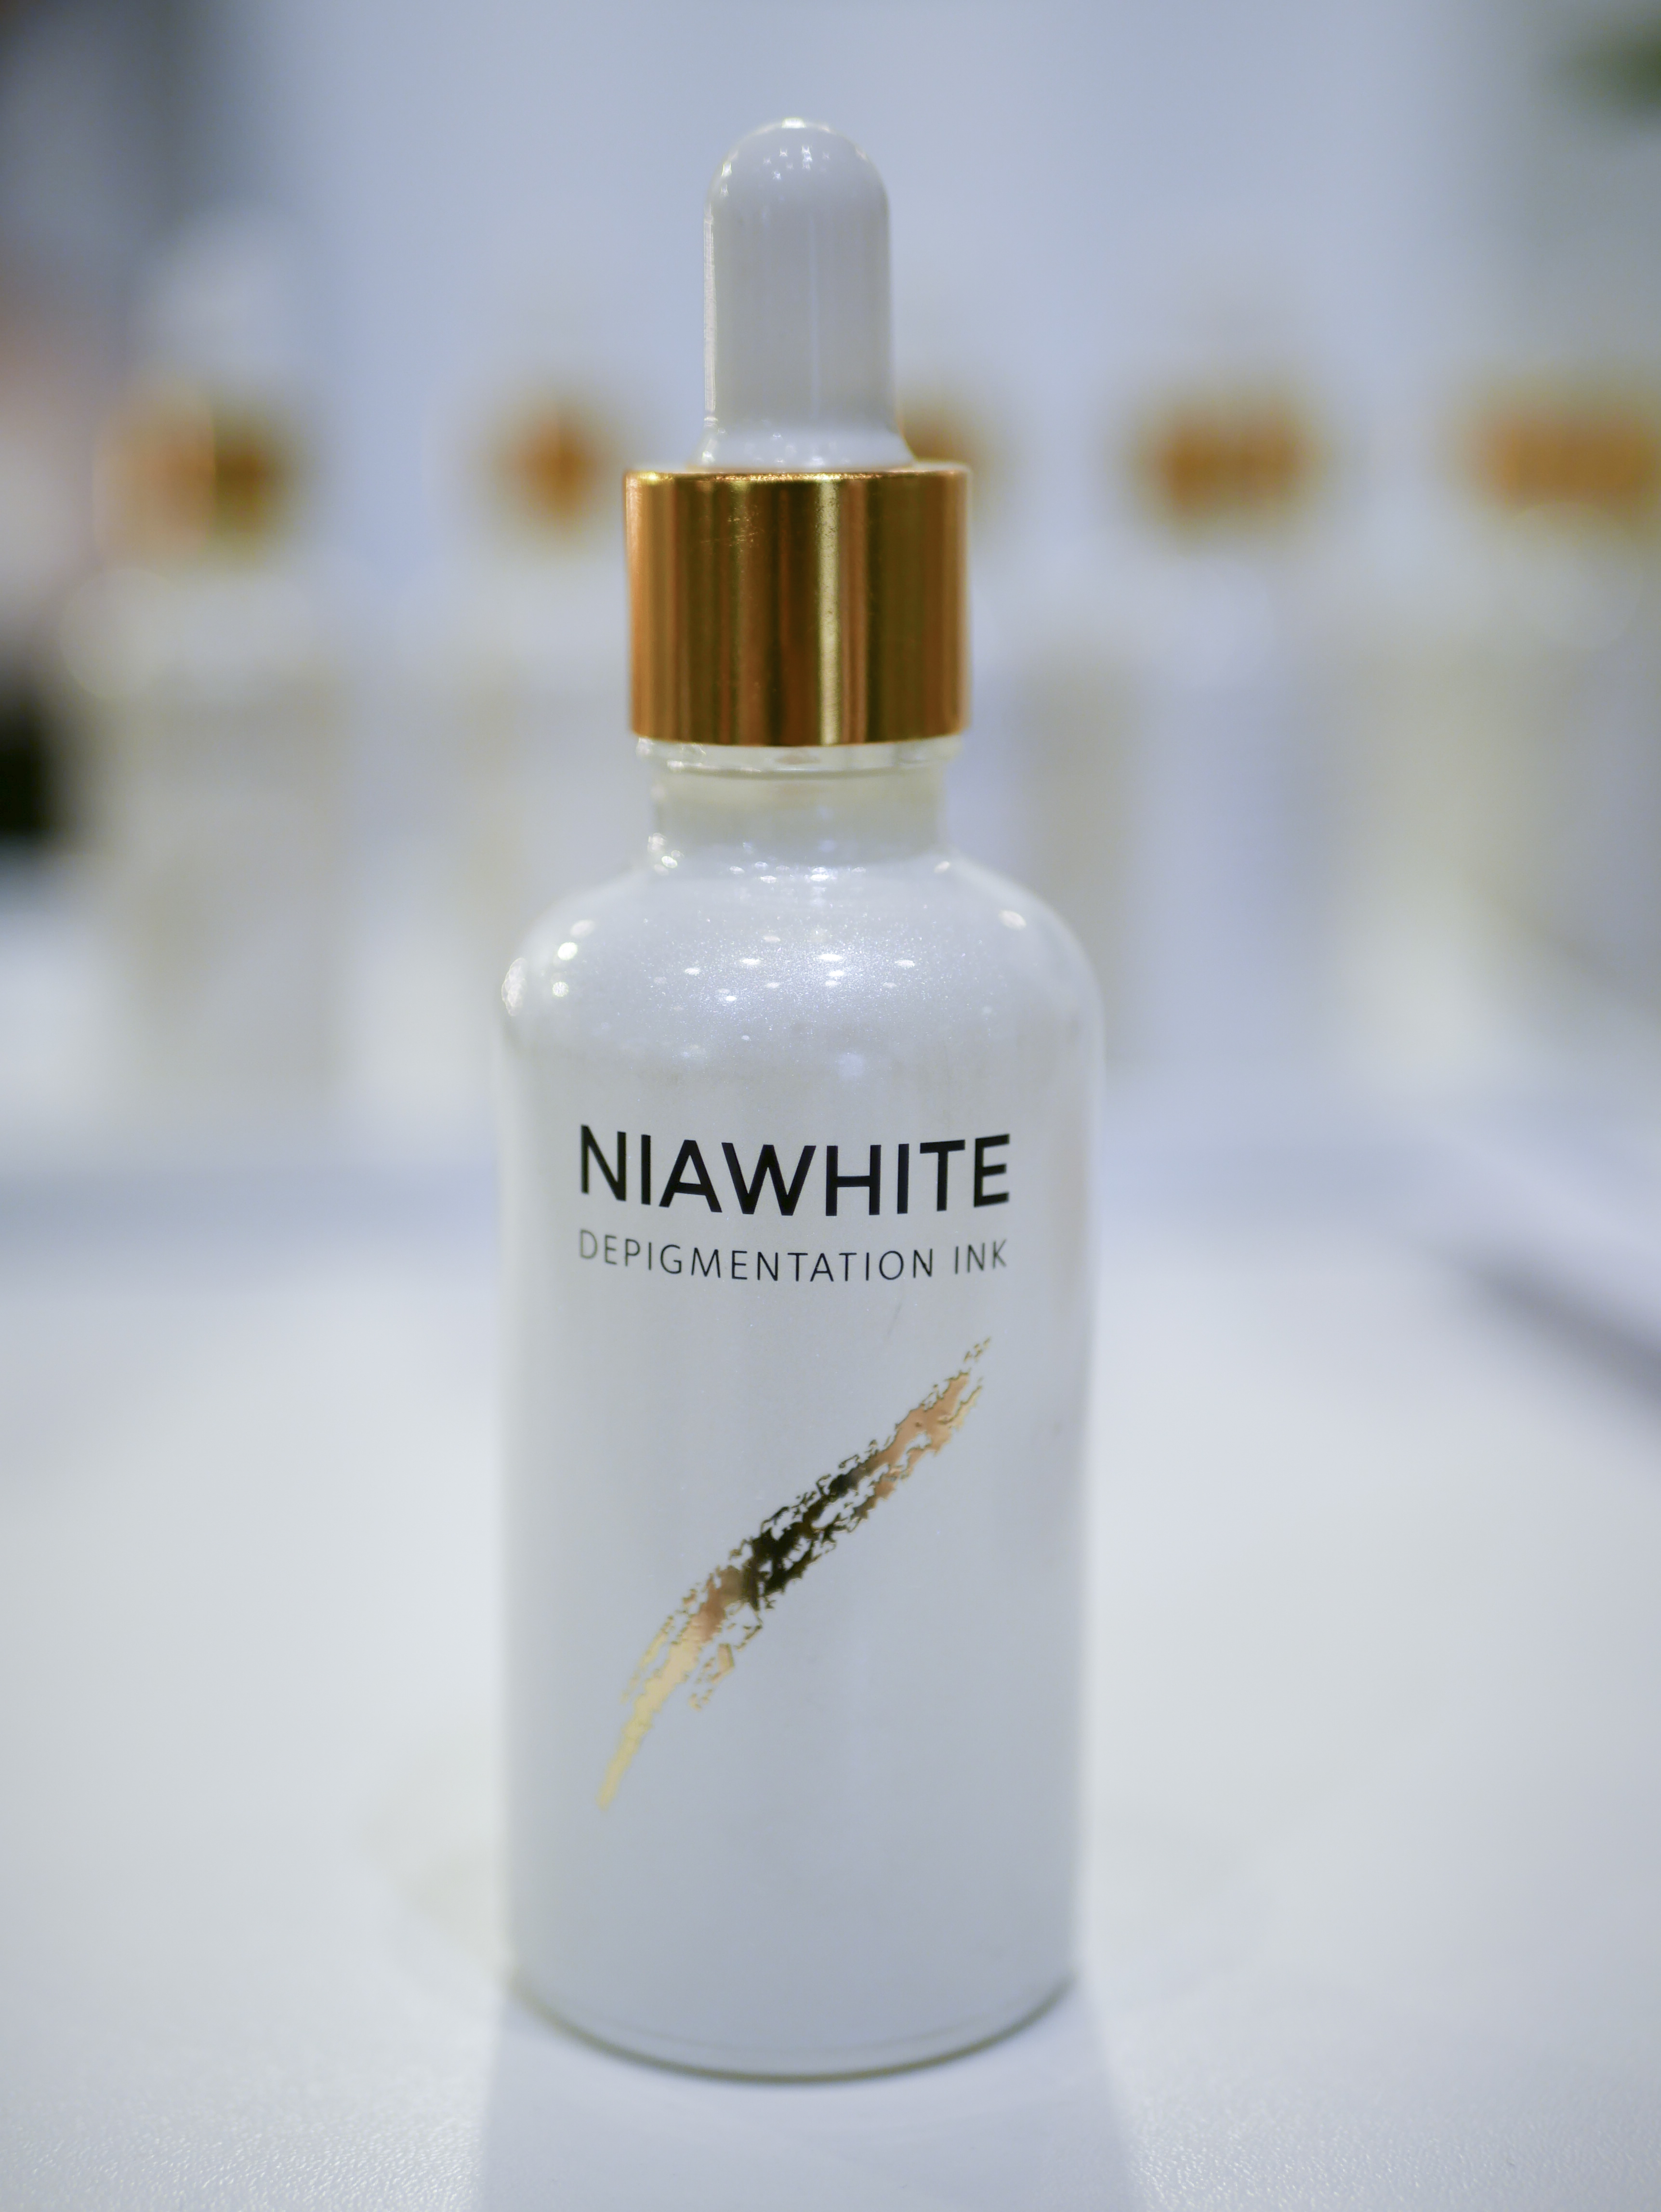 Svenska produkten Niawhite använder roten från pioner för att bleka pigmentfläckar